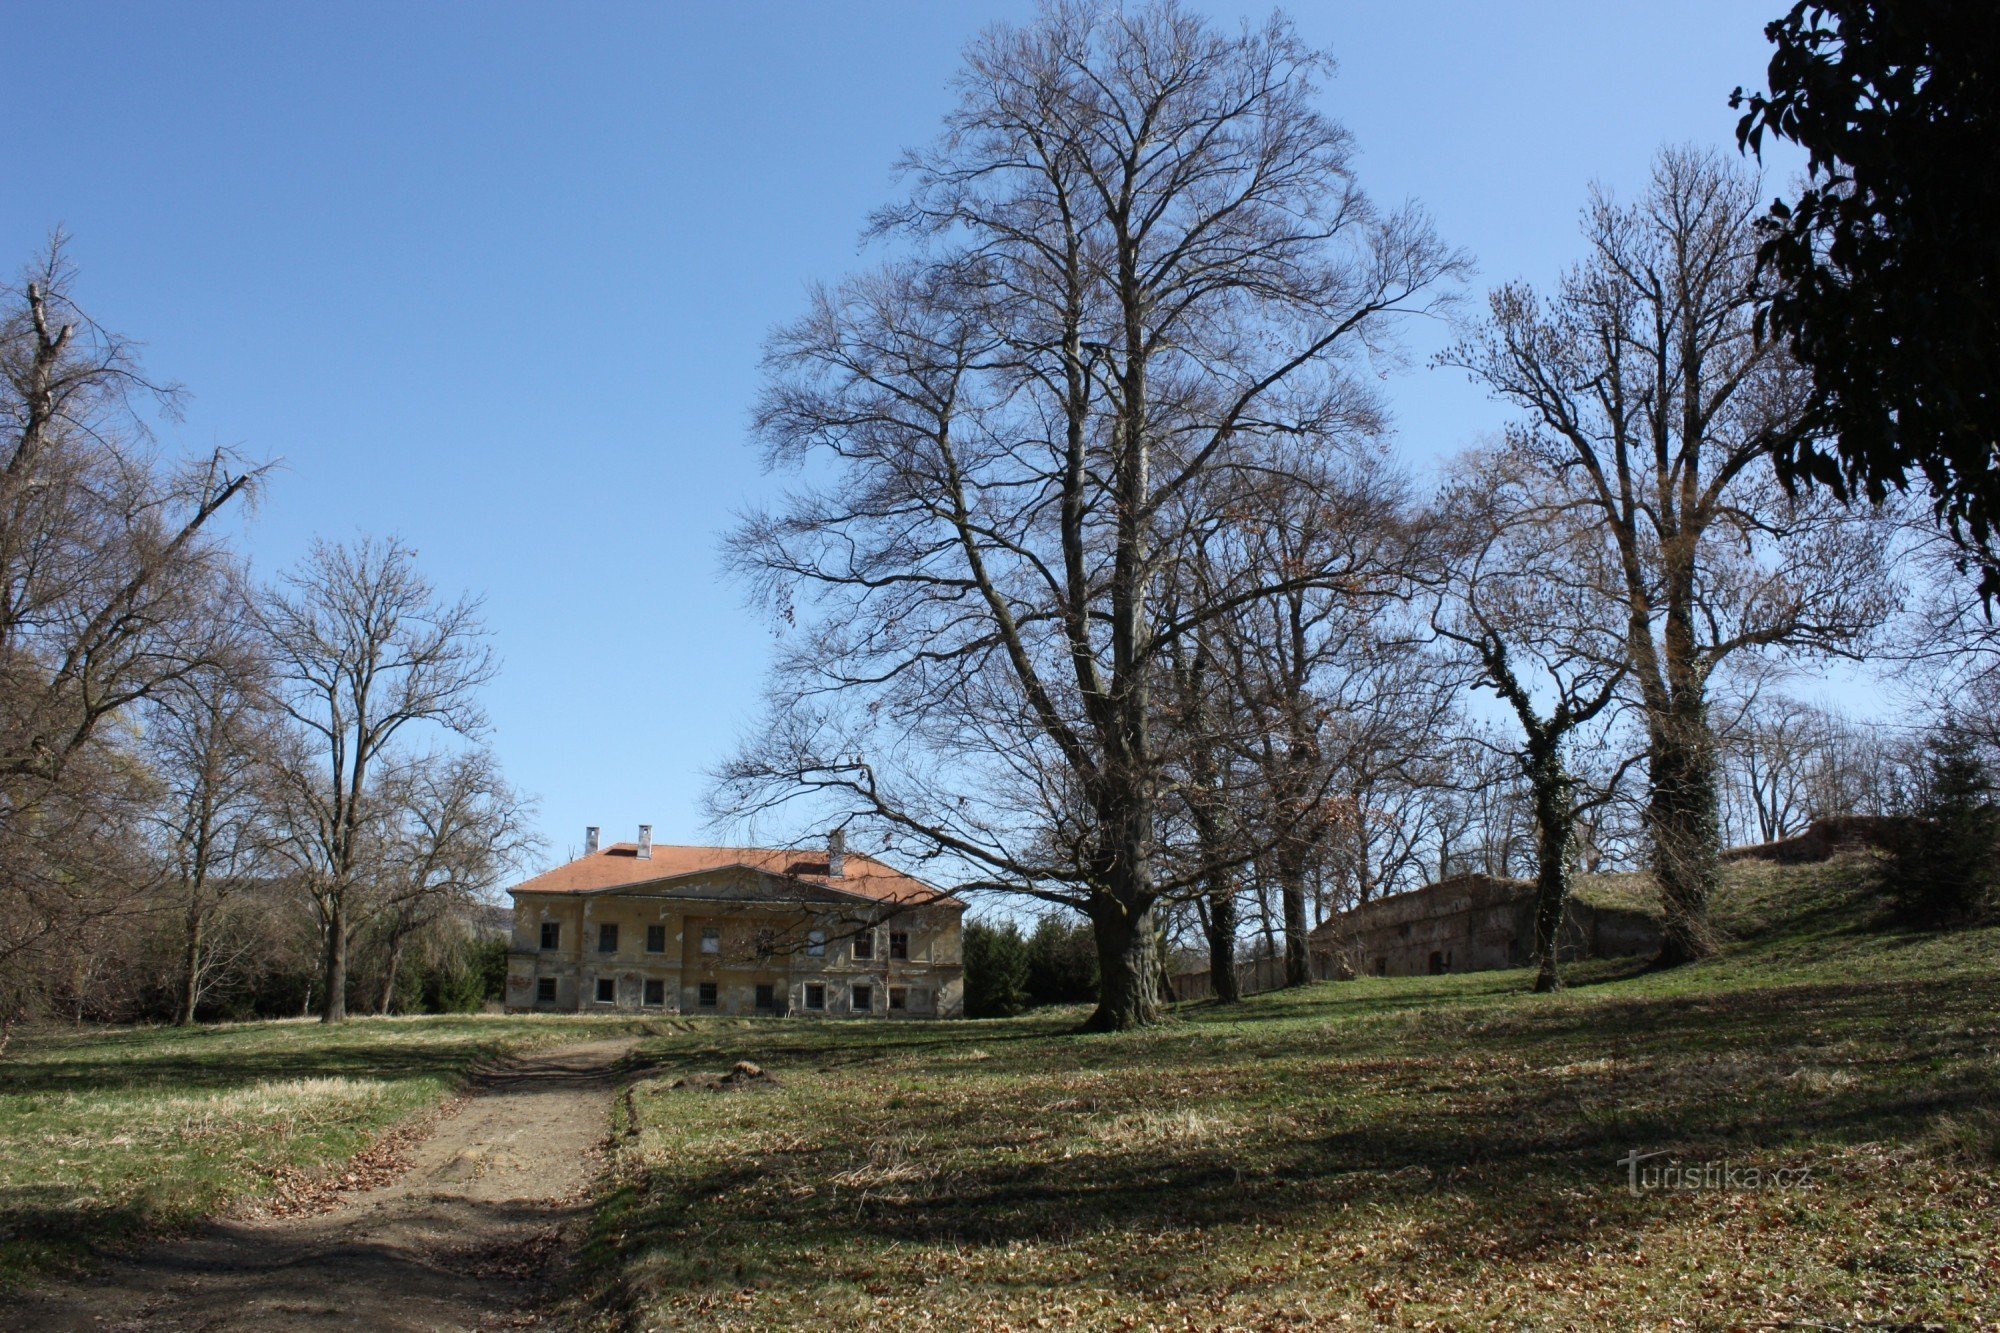 Kỷ niệm hai trăm năm thành lập lâu đài Komorov